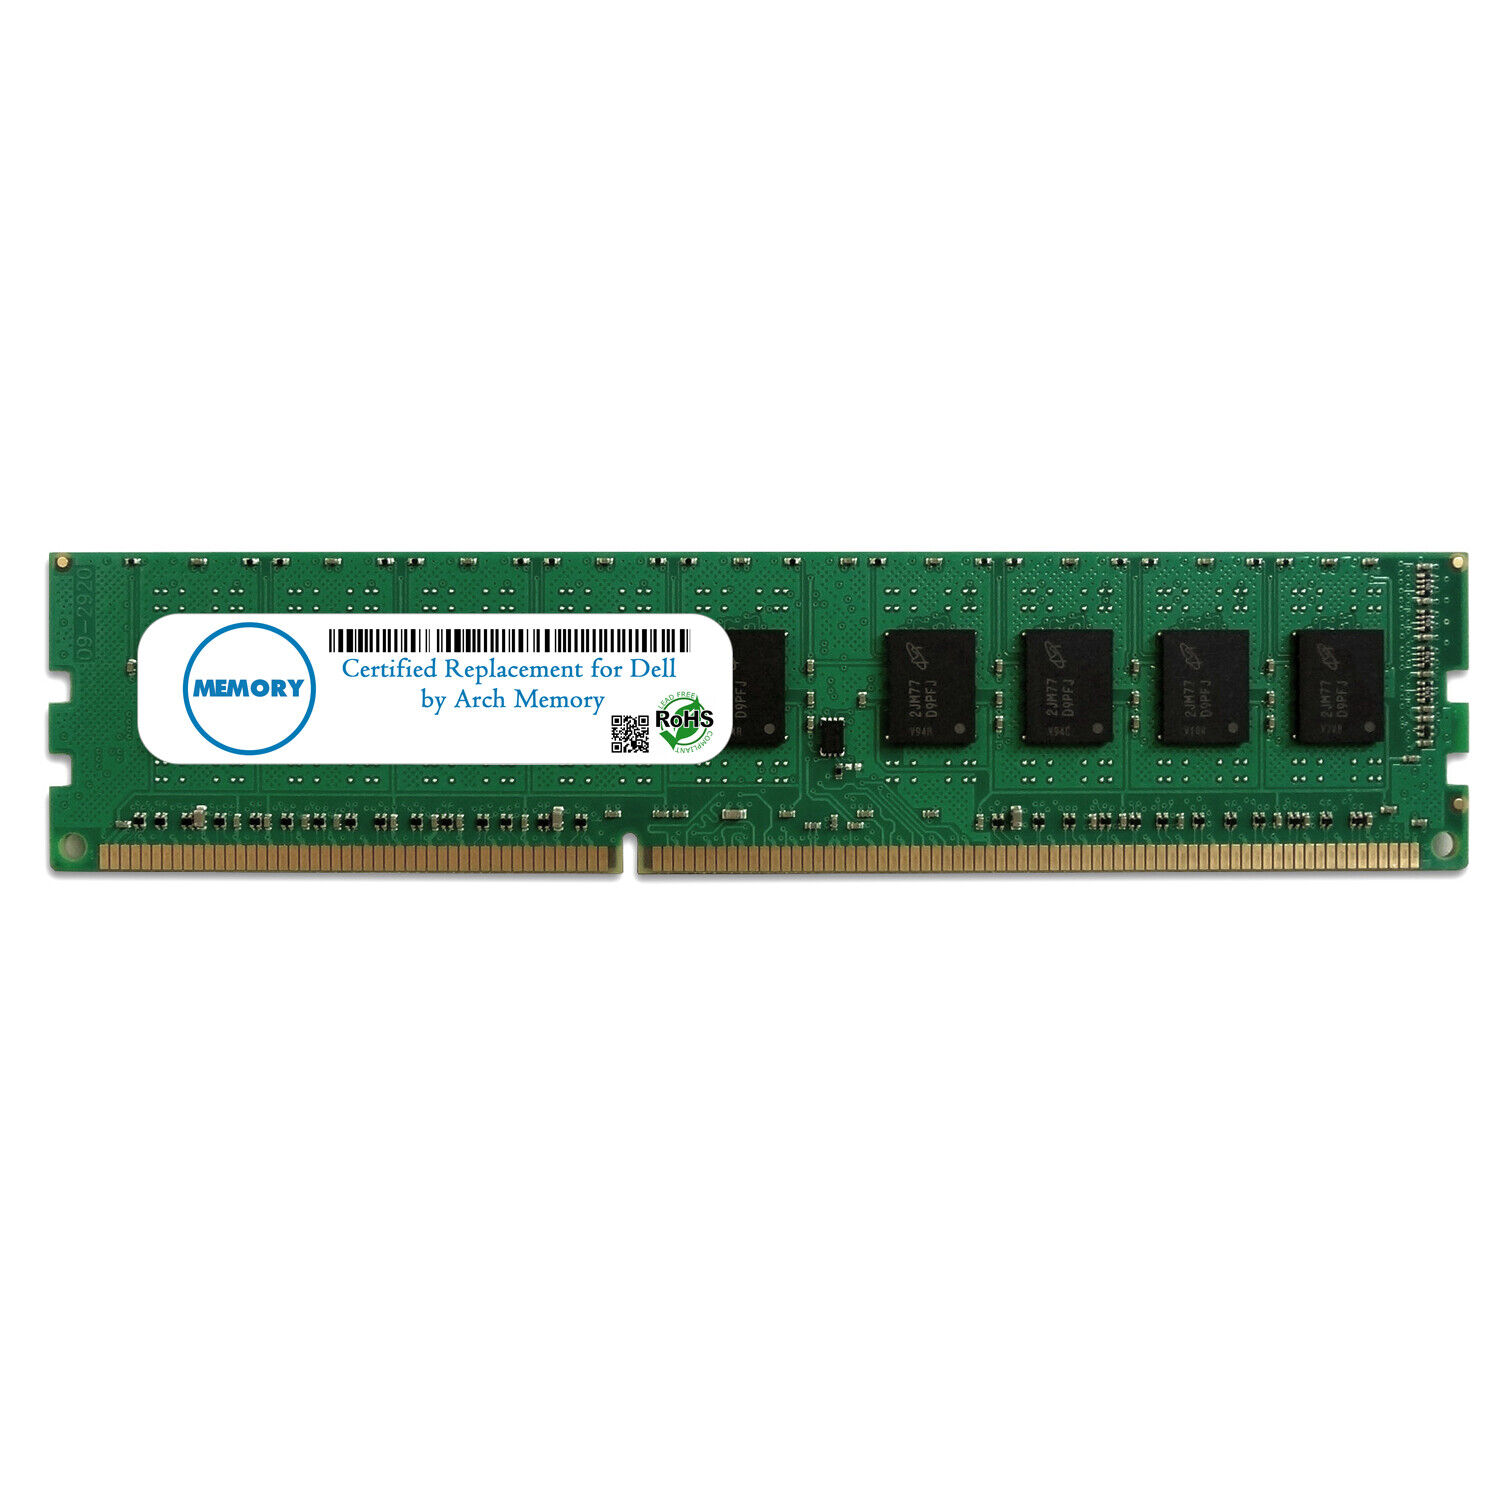 8GB SNPVR648C/8G A8733212 240-Pin PC3L-12800 DDR3L UDIMM RAM Memory for Dell